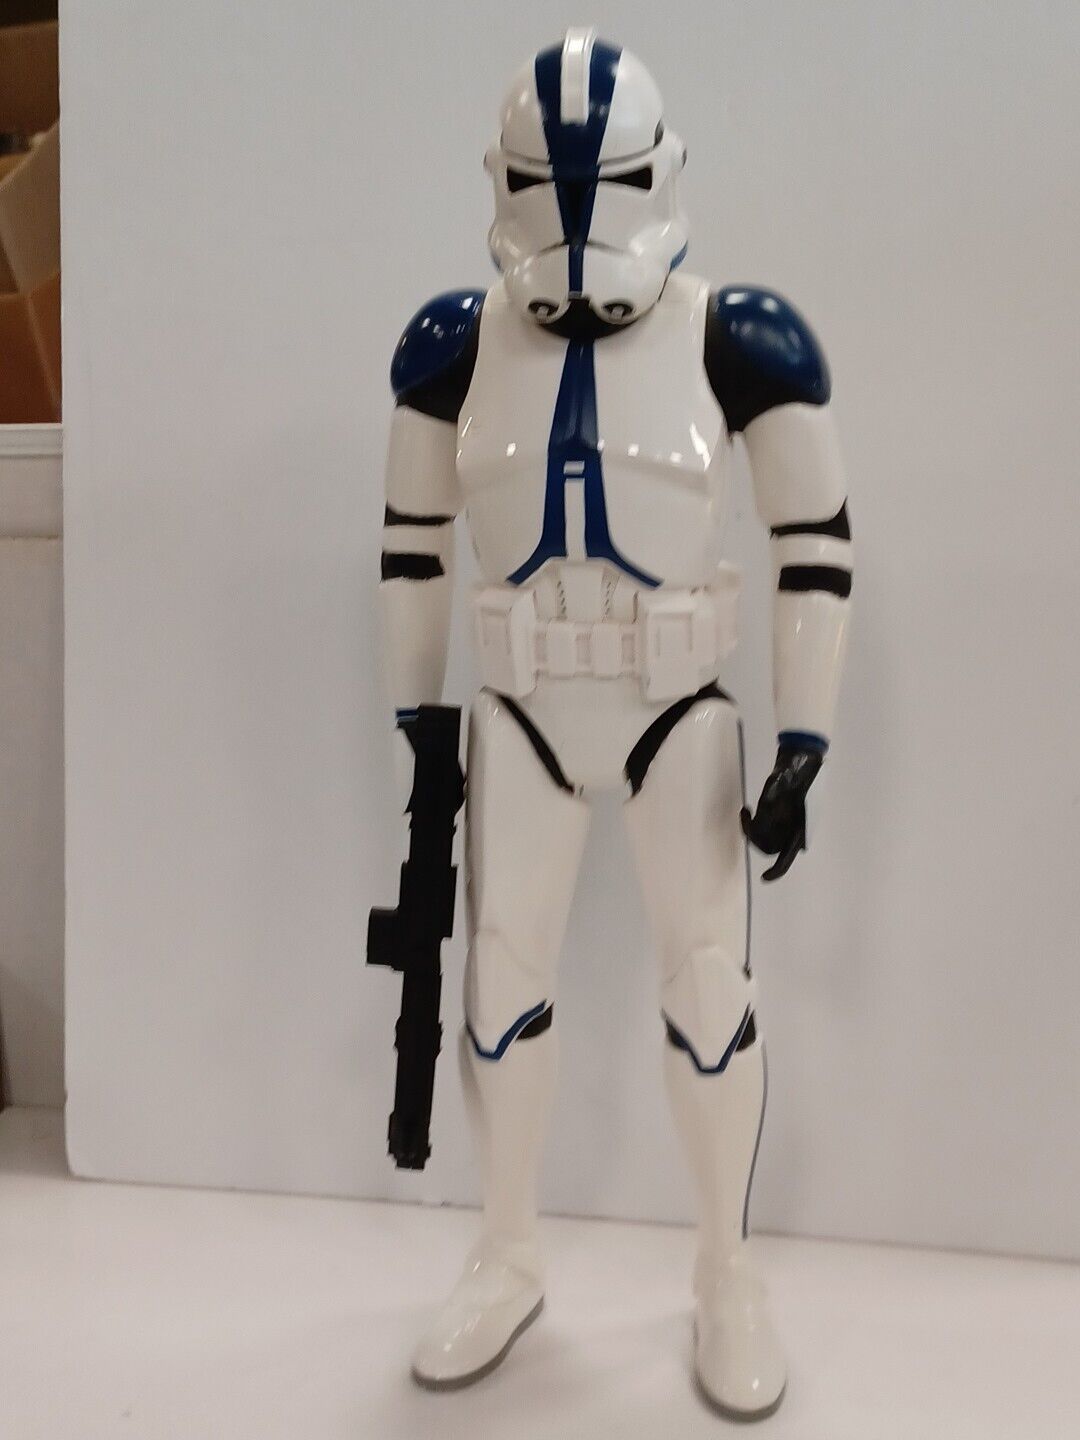 2016 JAKKS Star Wars 501st Legion Clone Trooper 18 Inch Action Figure / No Gun